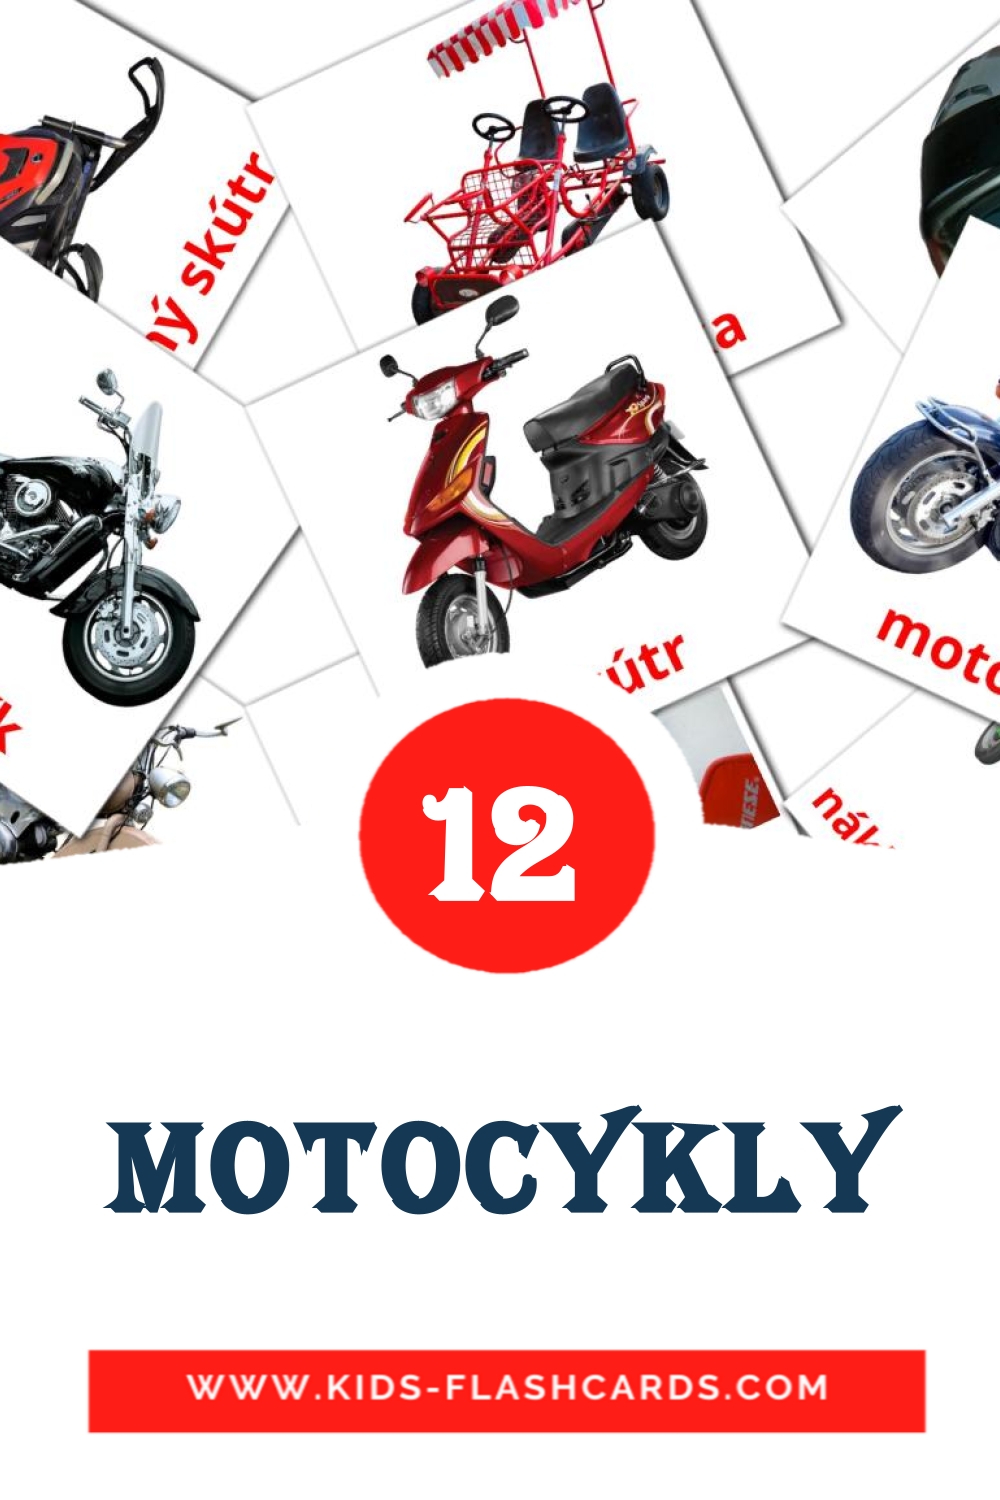 Motocykly на чешском для Детского Сада (12 карточек)